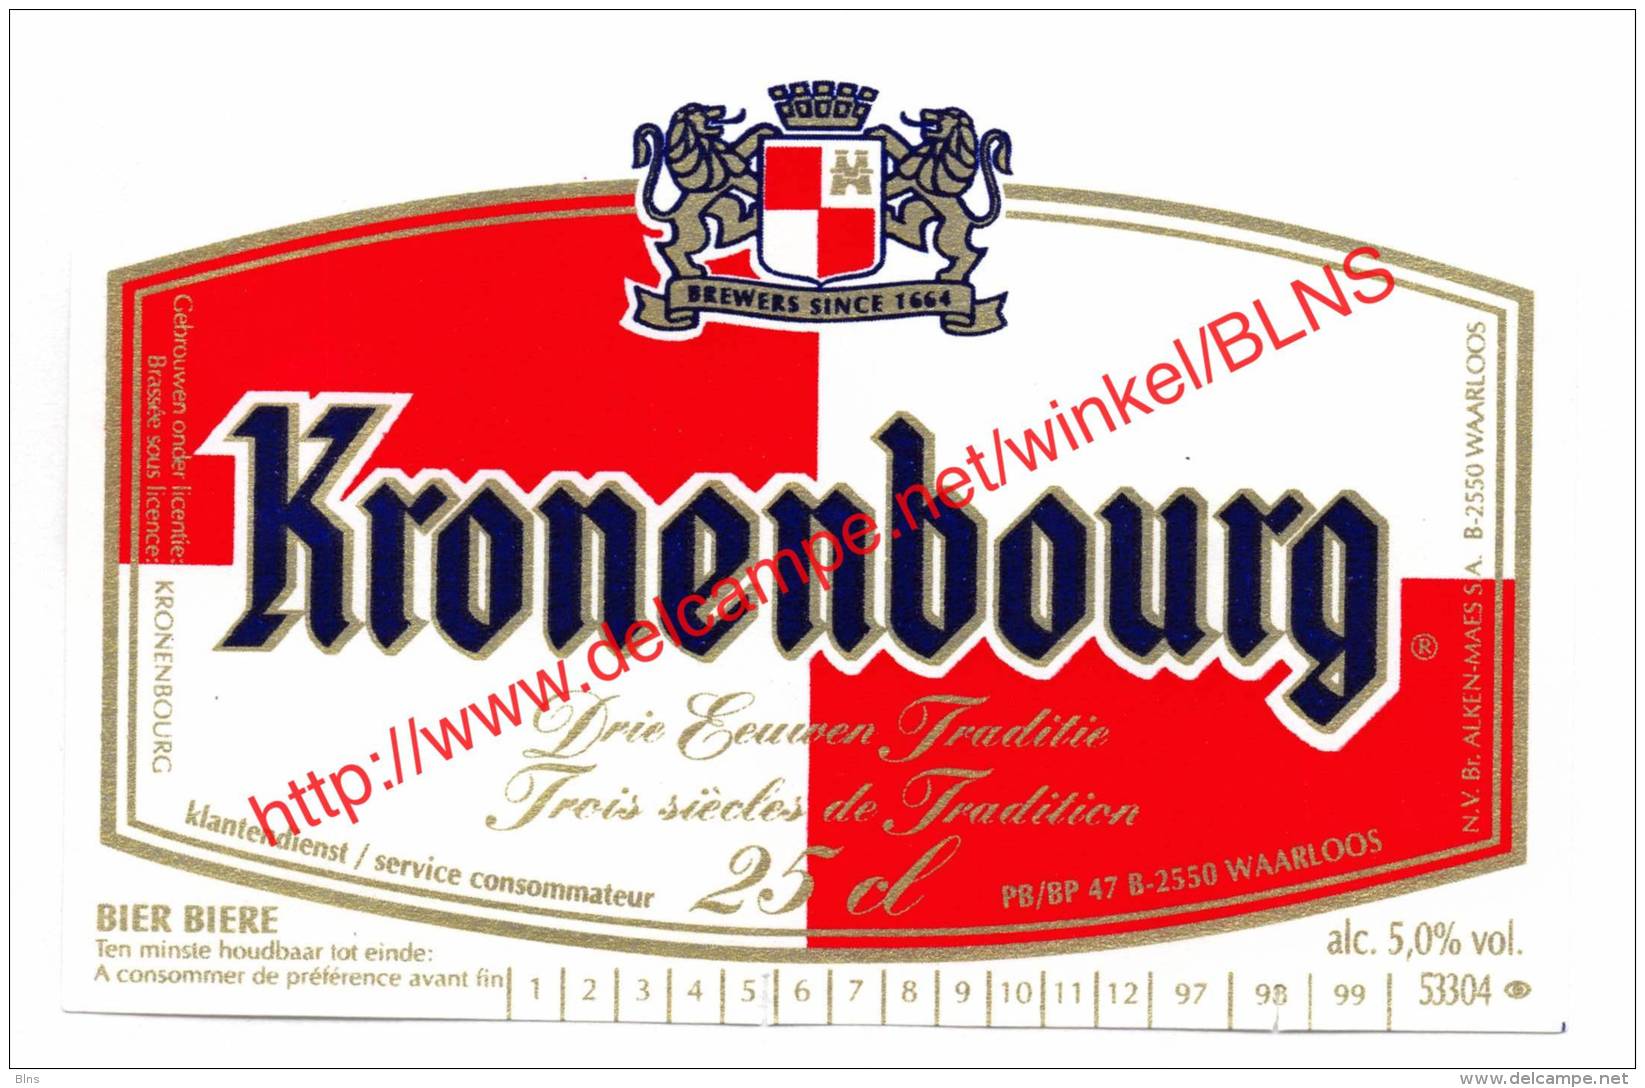 Kronenbourg - Brouwerij Alken-Maes - Bière